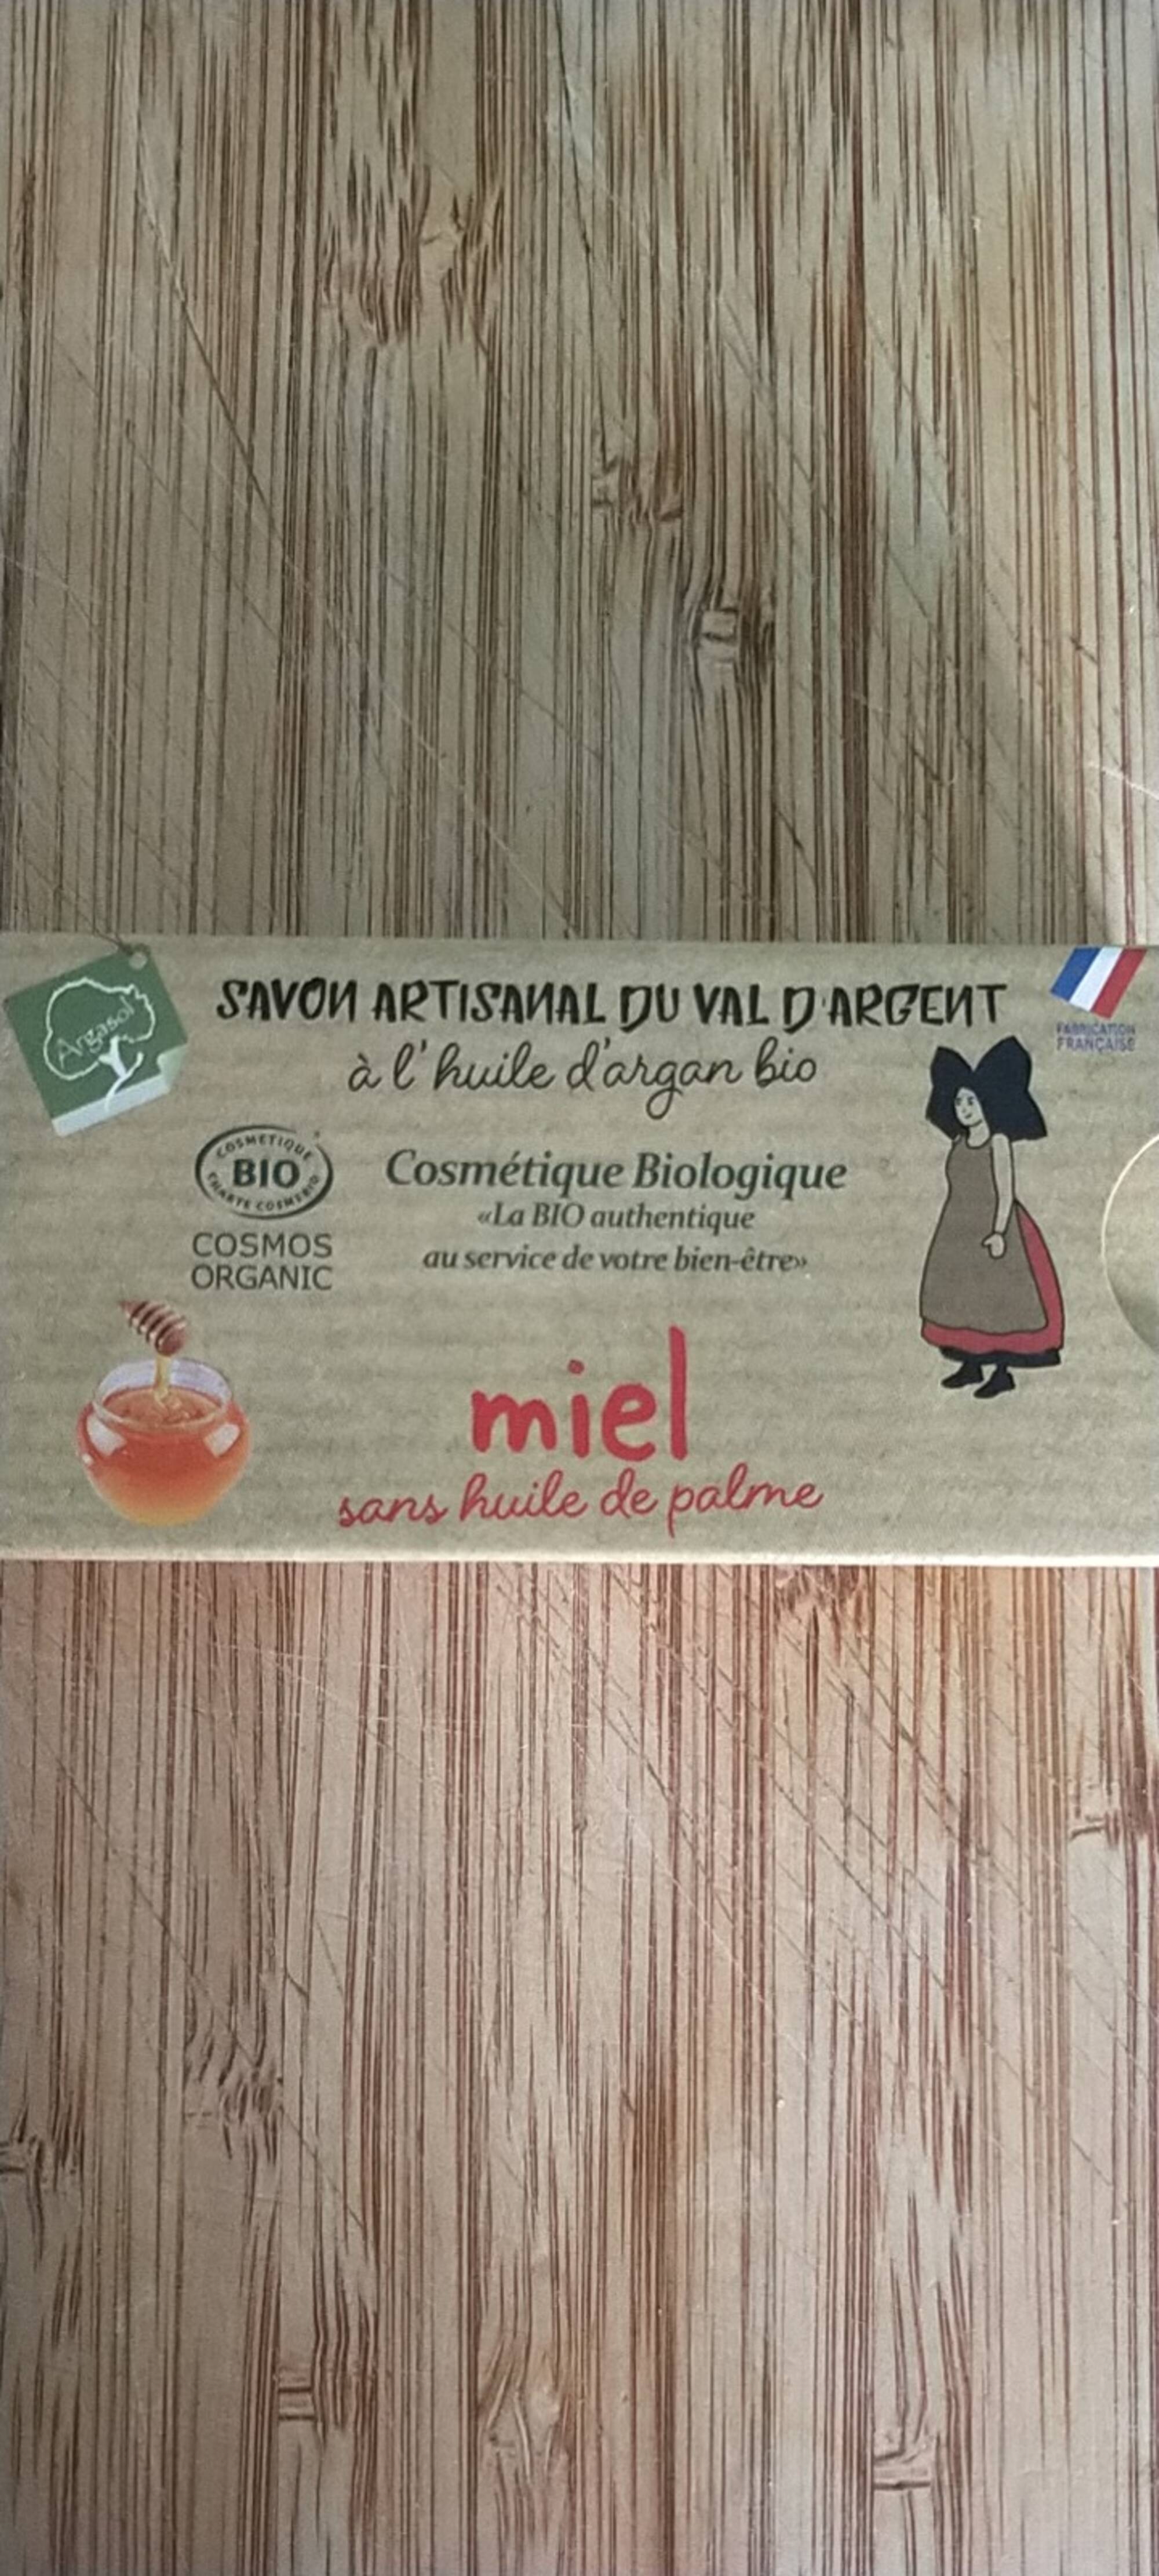 SAVONNERIE ARTISANALE DU VAL D'ARGENT - Savon miel sans huile de palme